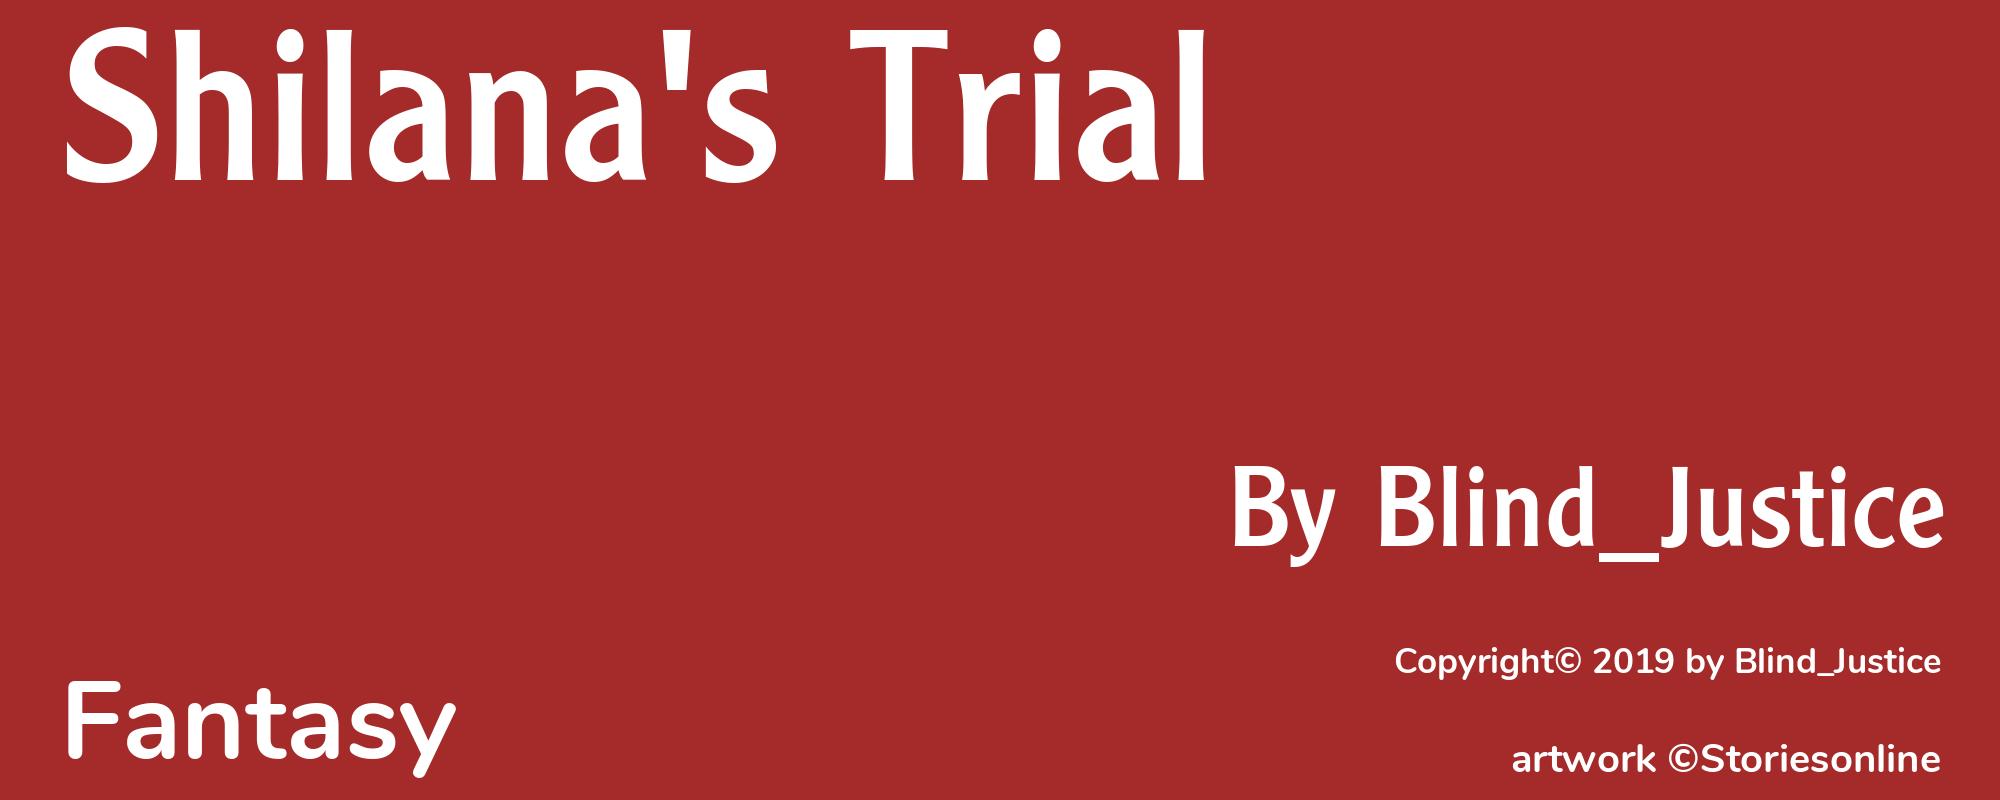 Shilana's Trial - Cover